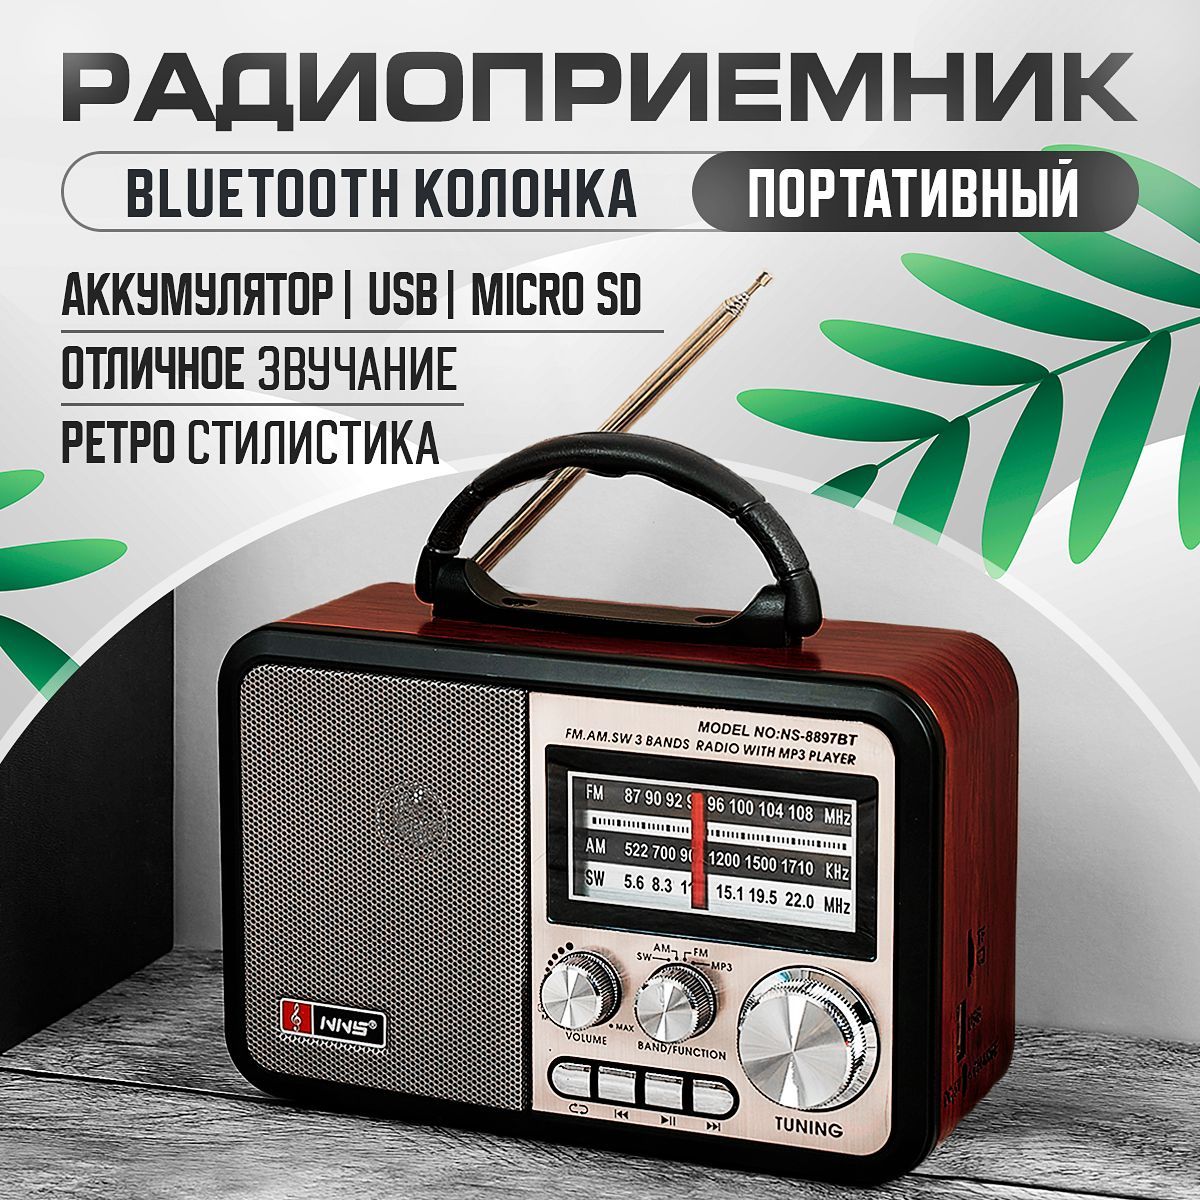 Радио Ретро FM Выборг 91.2 FM